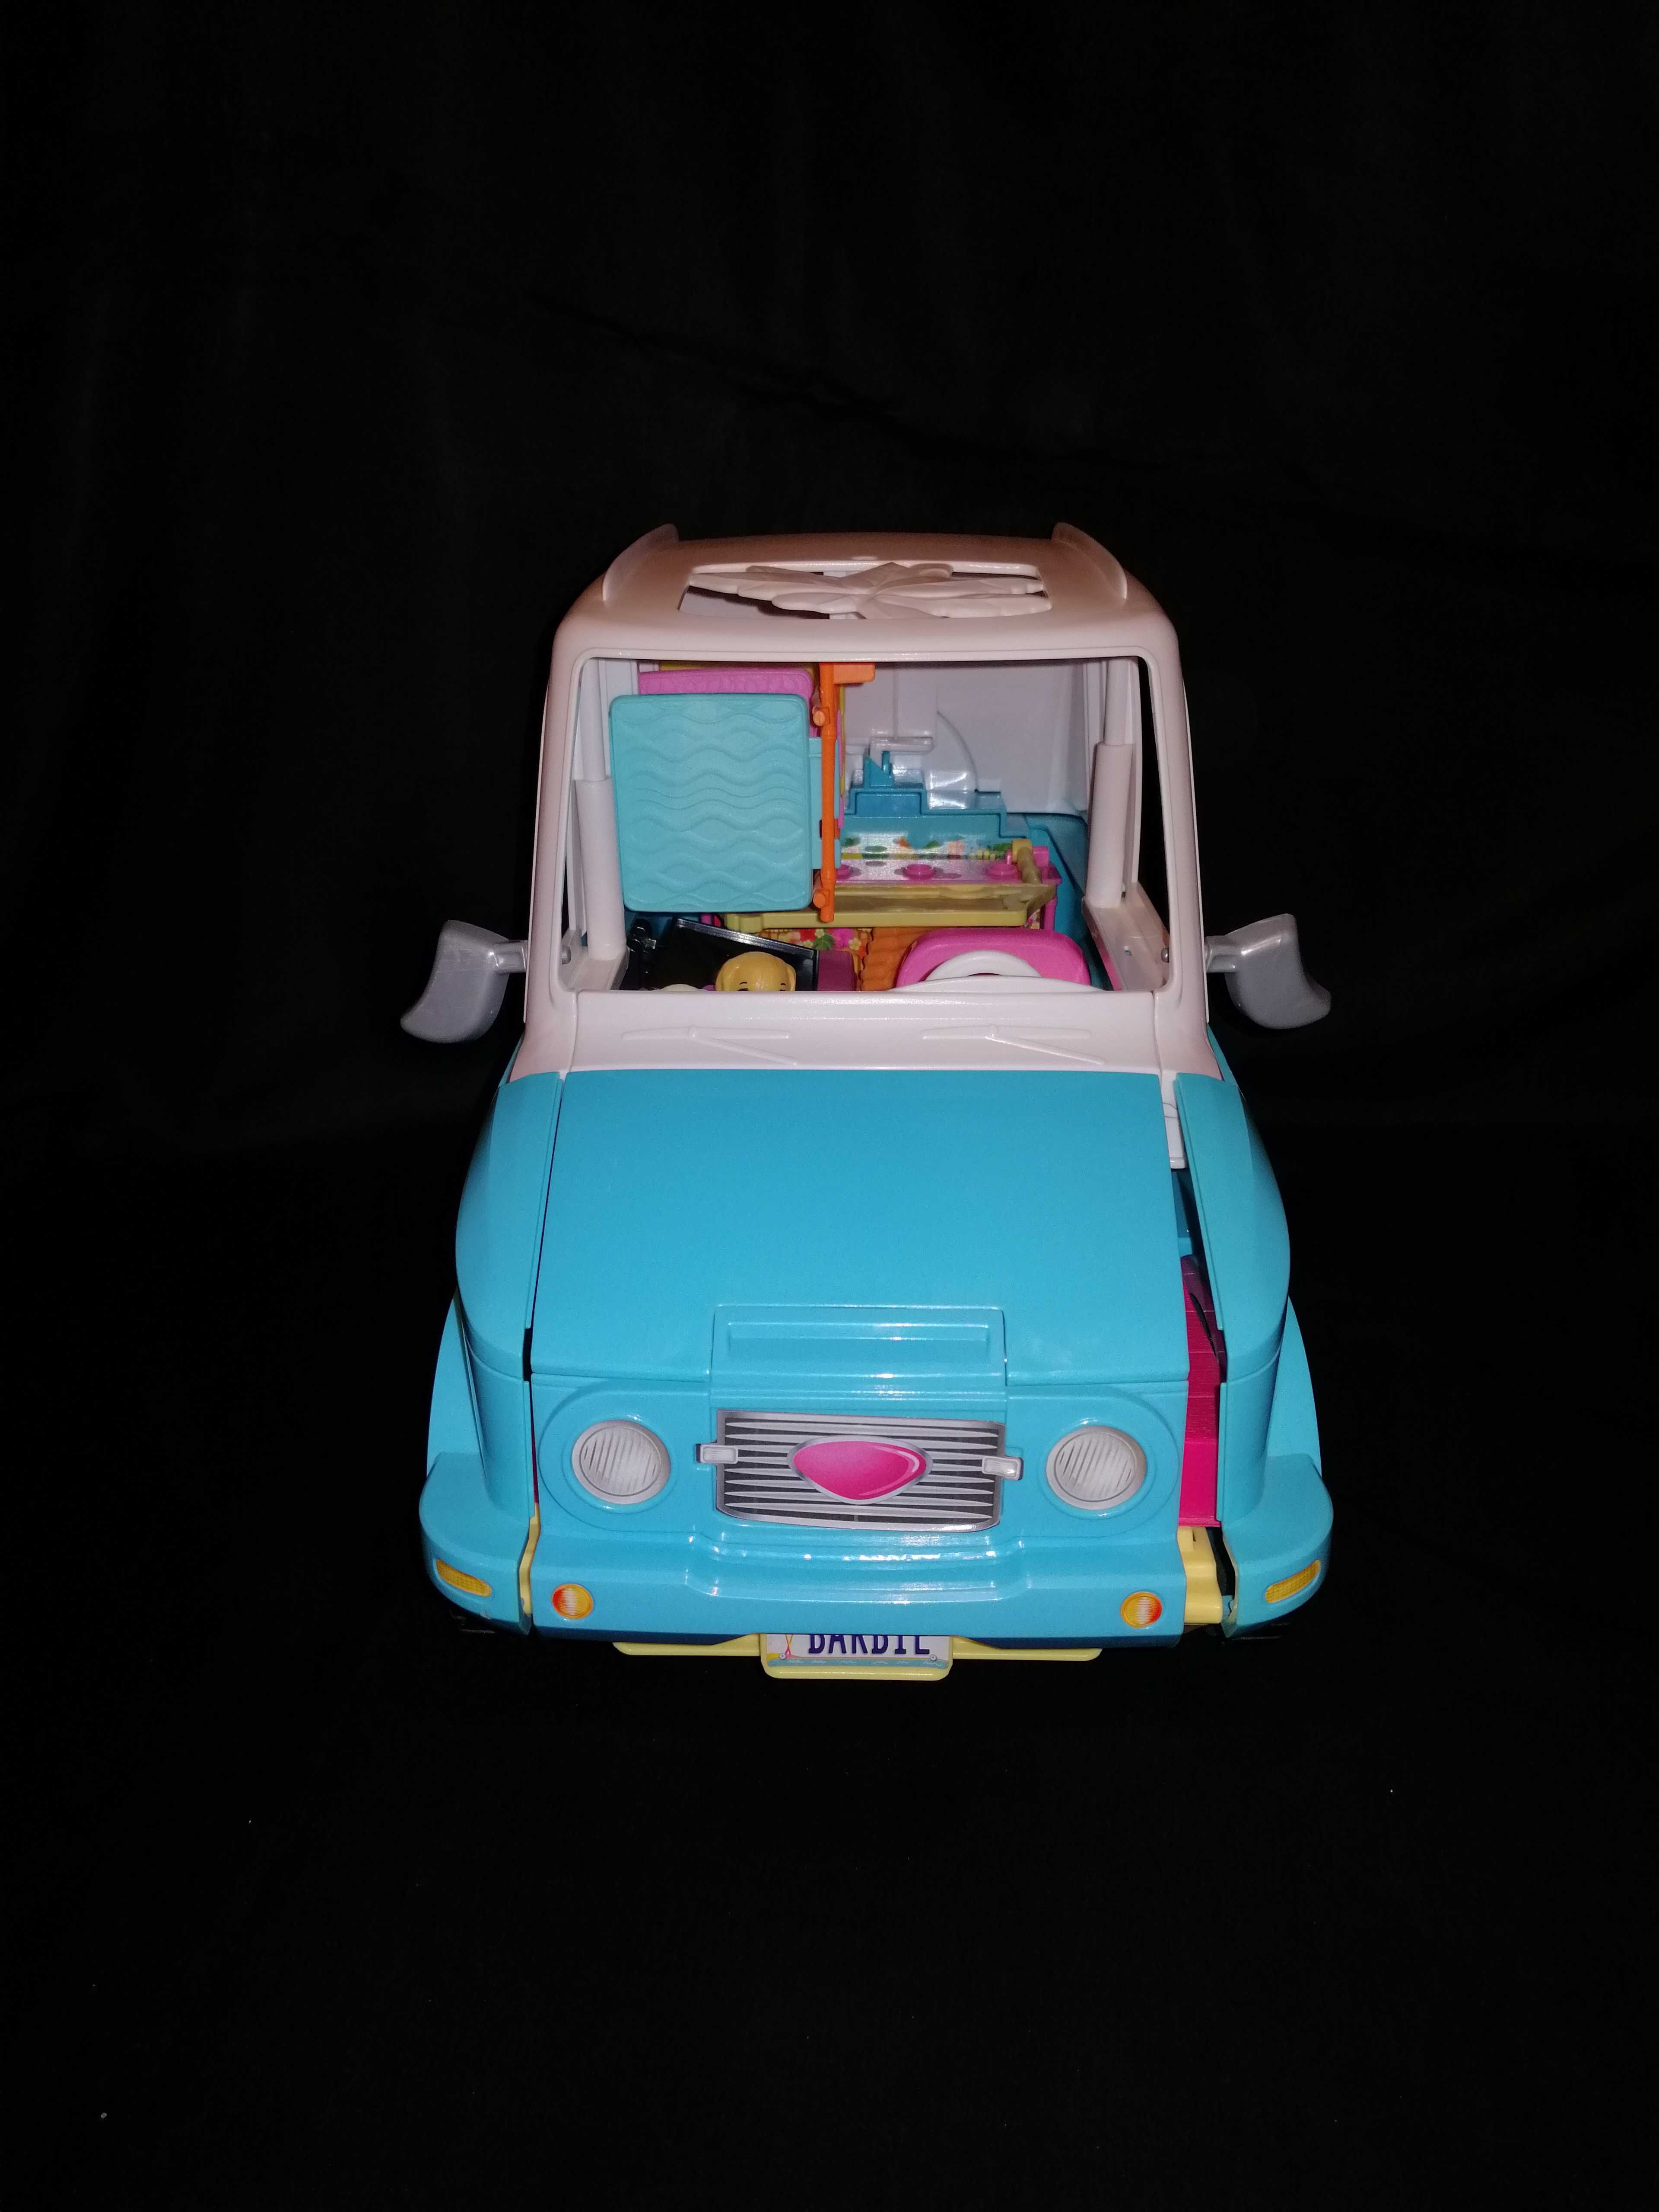 Wakacyjny pojazd piesków Barbie kamper firmy Matel